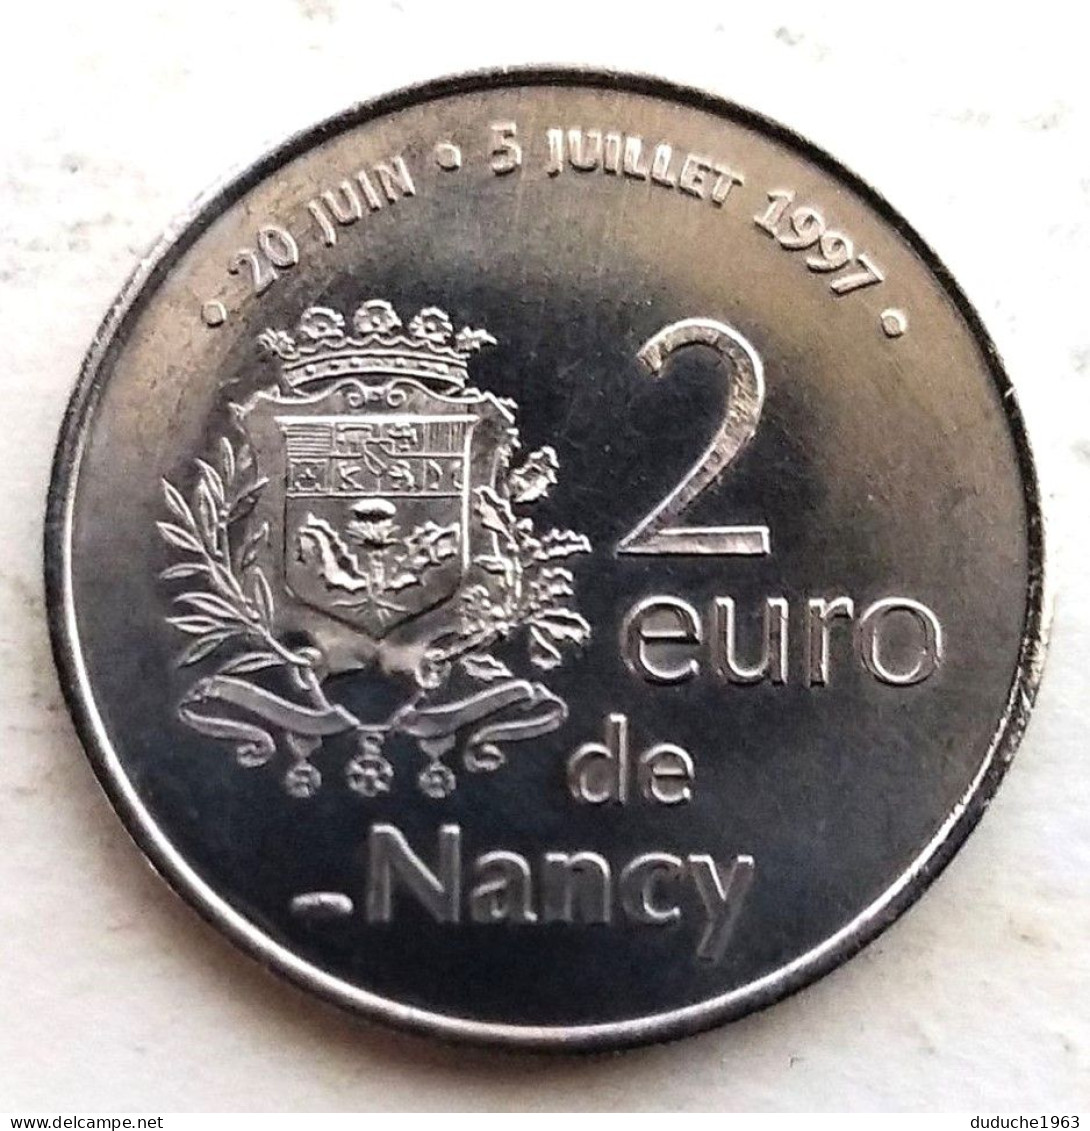 Euro Des Villes/Temporaire - Nancy - 2 Euro 1997 - Euros Des Villes